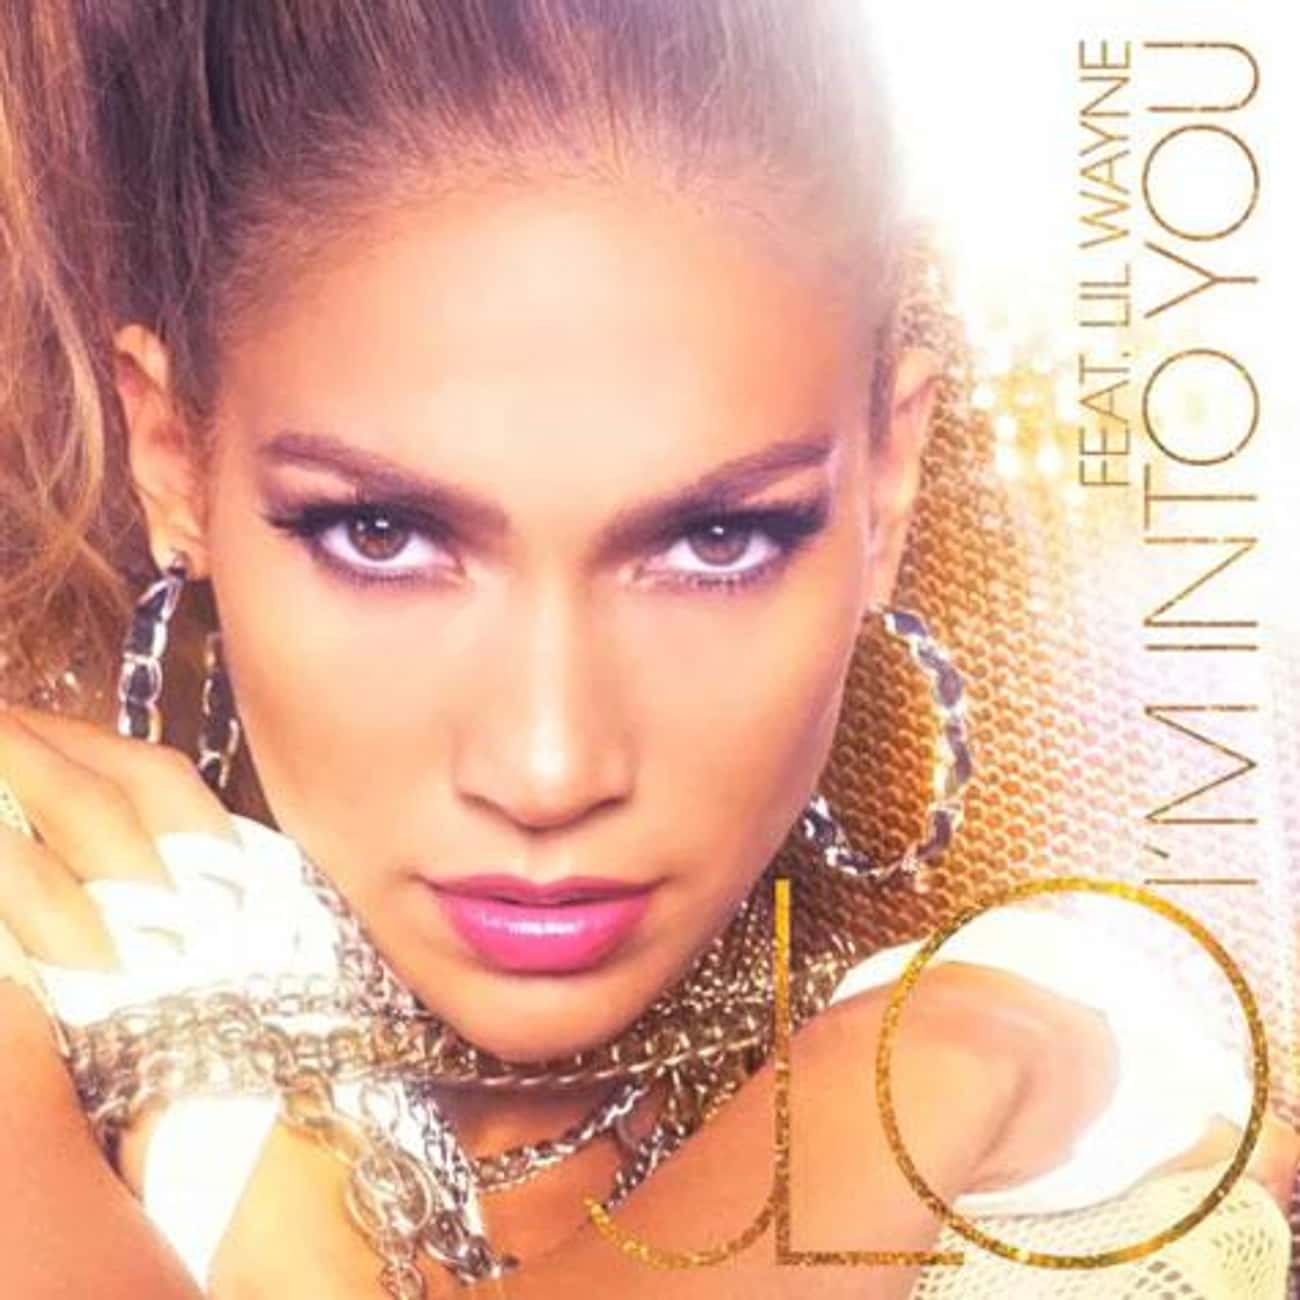 Jennifer Lopez - I'm Into You ft. Lil' Wayne